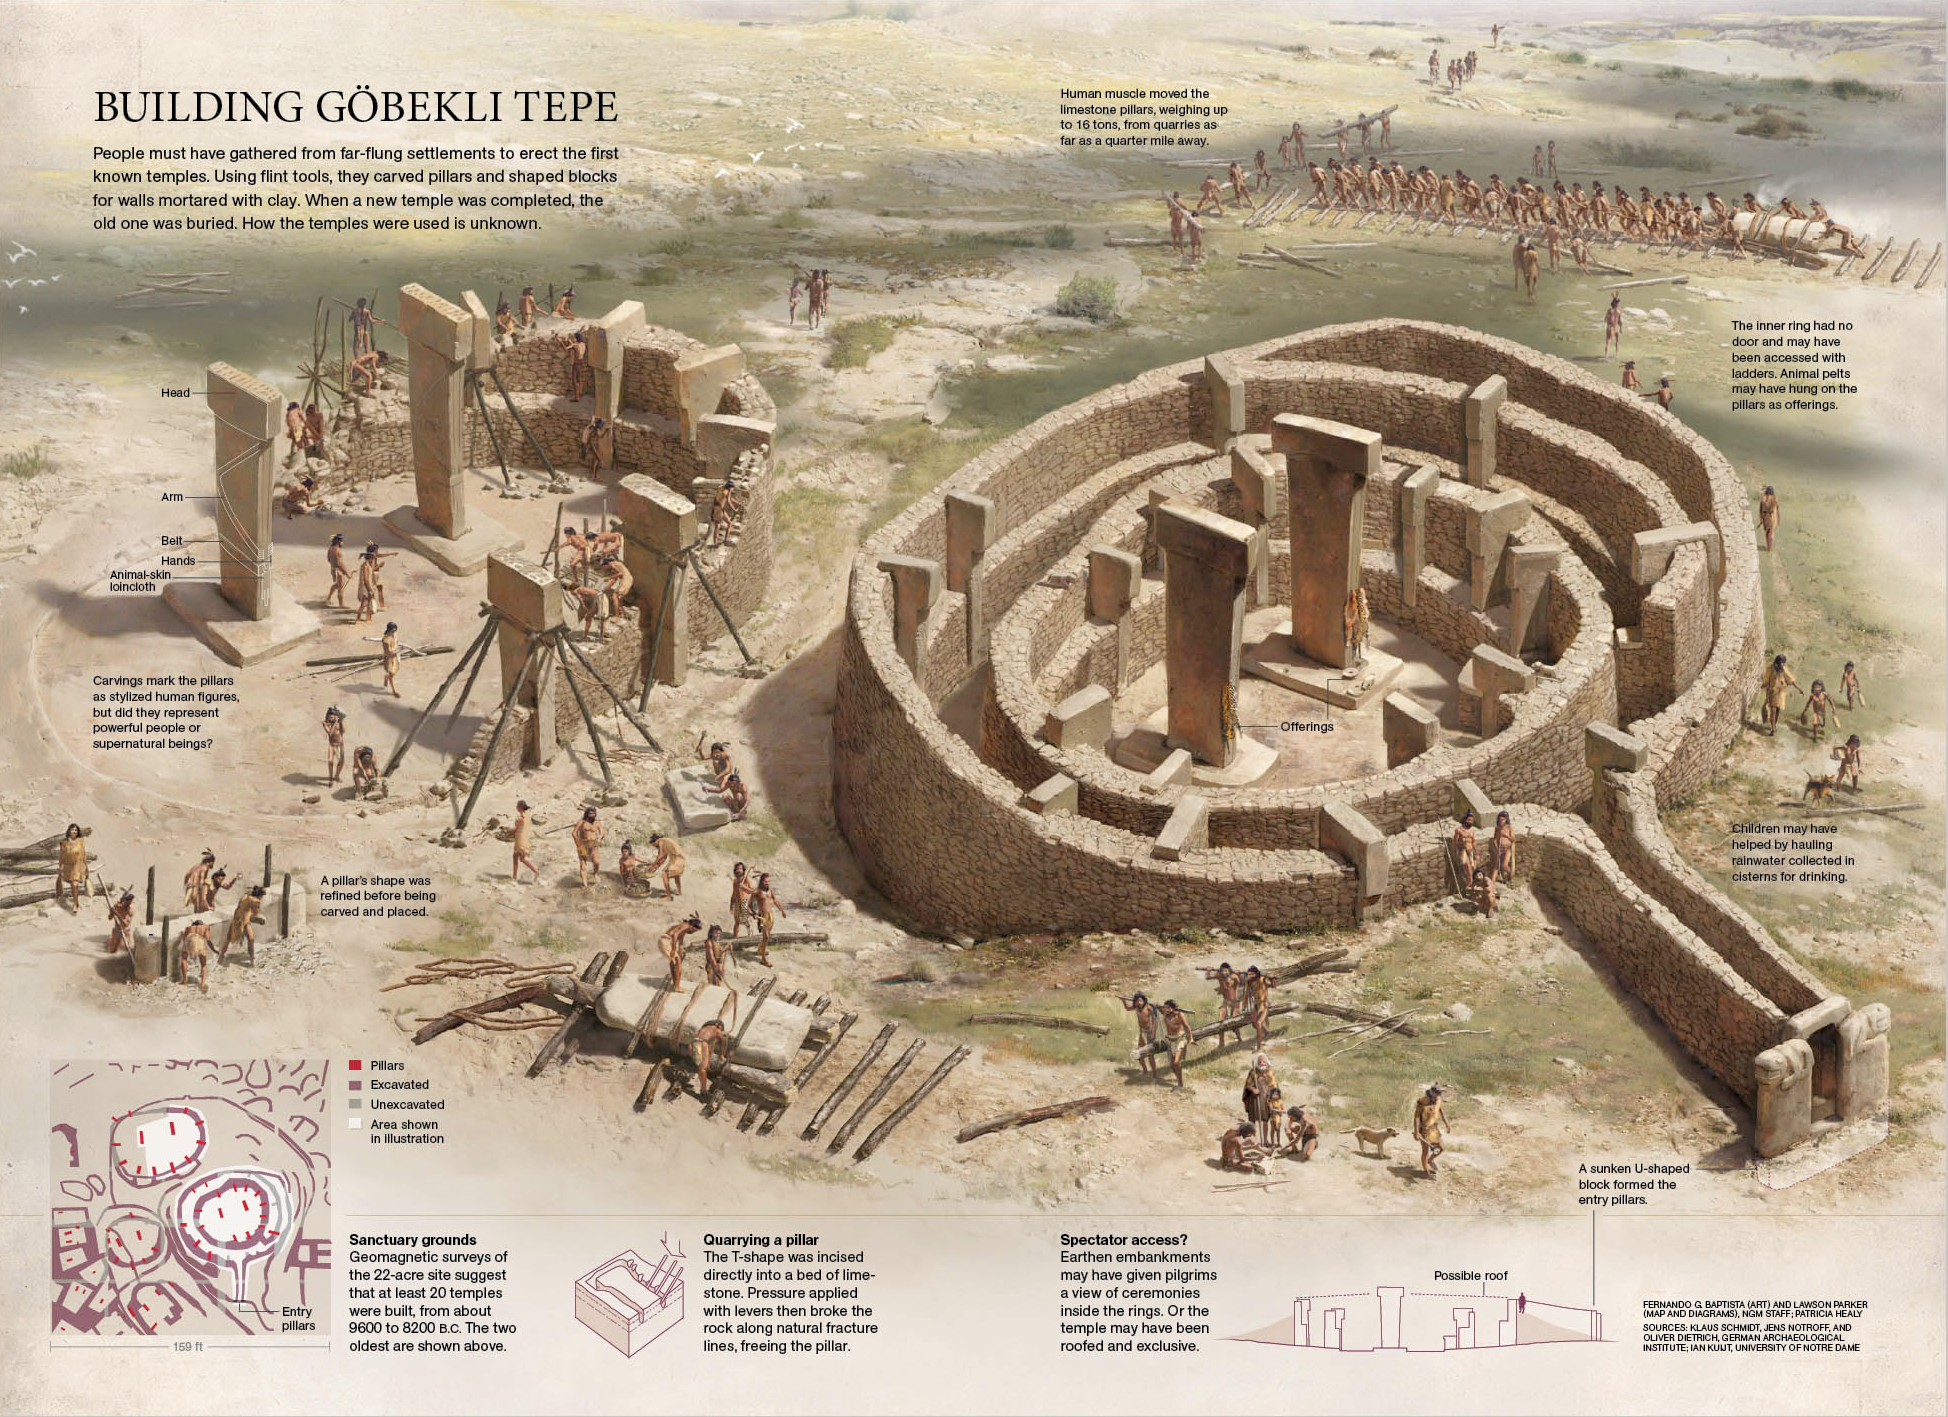 哥貝克力石陣（9,600B.C.-8,200B.C），全球已知最早的神殿。考古學家在遺址內發現了200多根完好的石柱，由當時的居民從400米的一處高地搬運至此，每根石柱大約需要500個居民齊心合力，由當時的人口密度來看需要社區全員參與。有學者認為每年小麥成熟之時附近的居民會聚集在此建立神殿和舉行儀式。